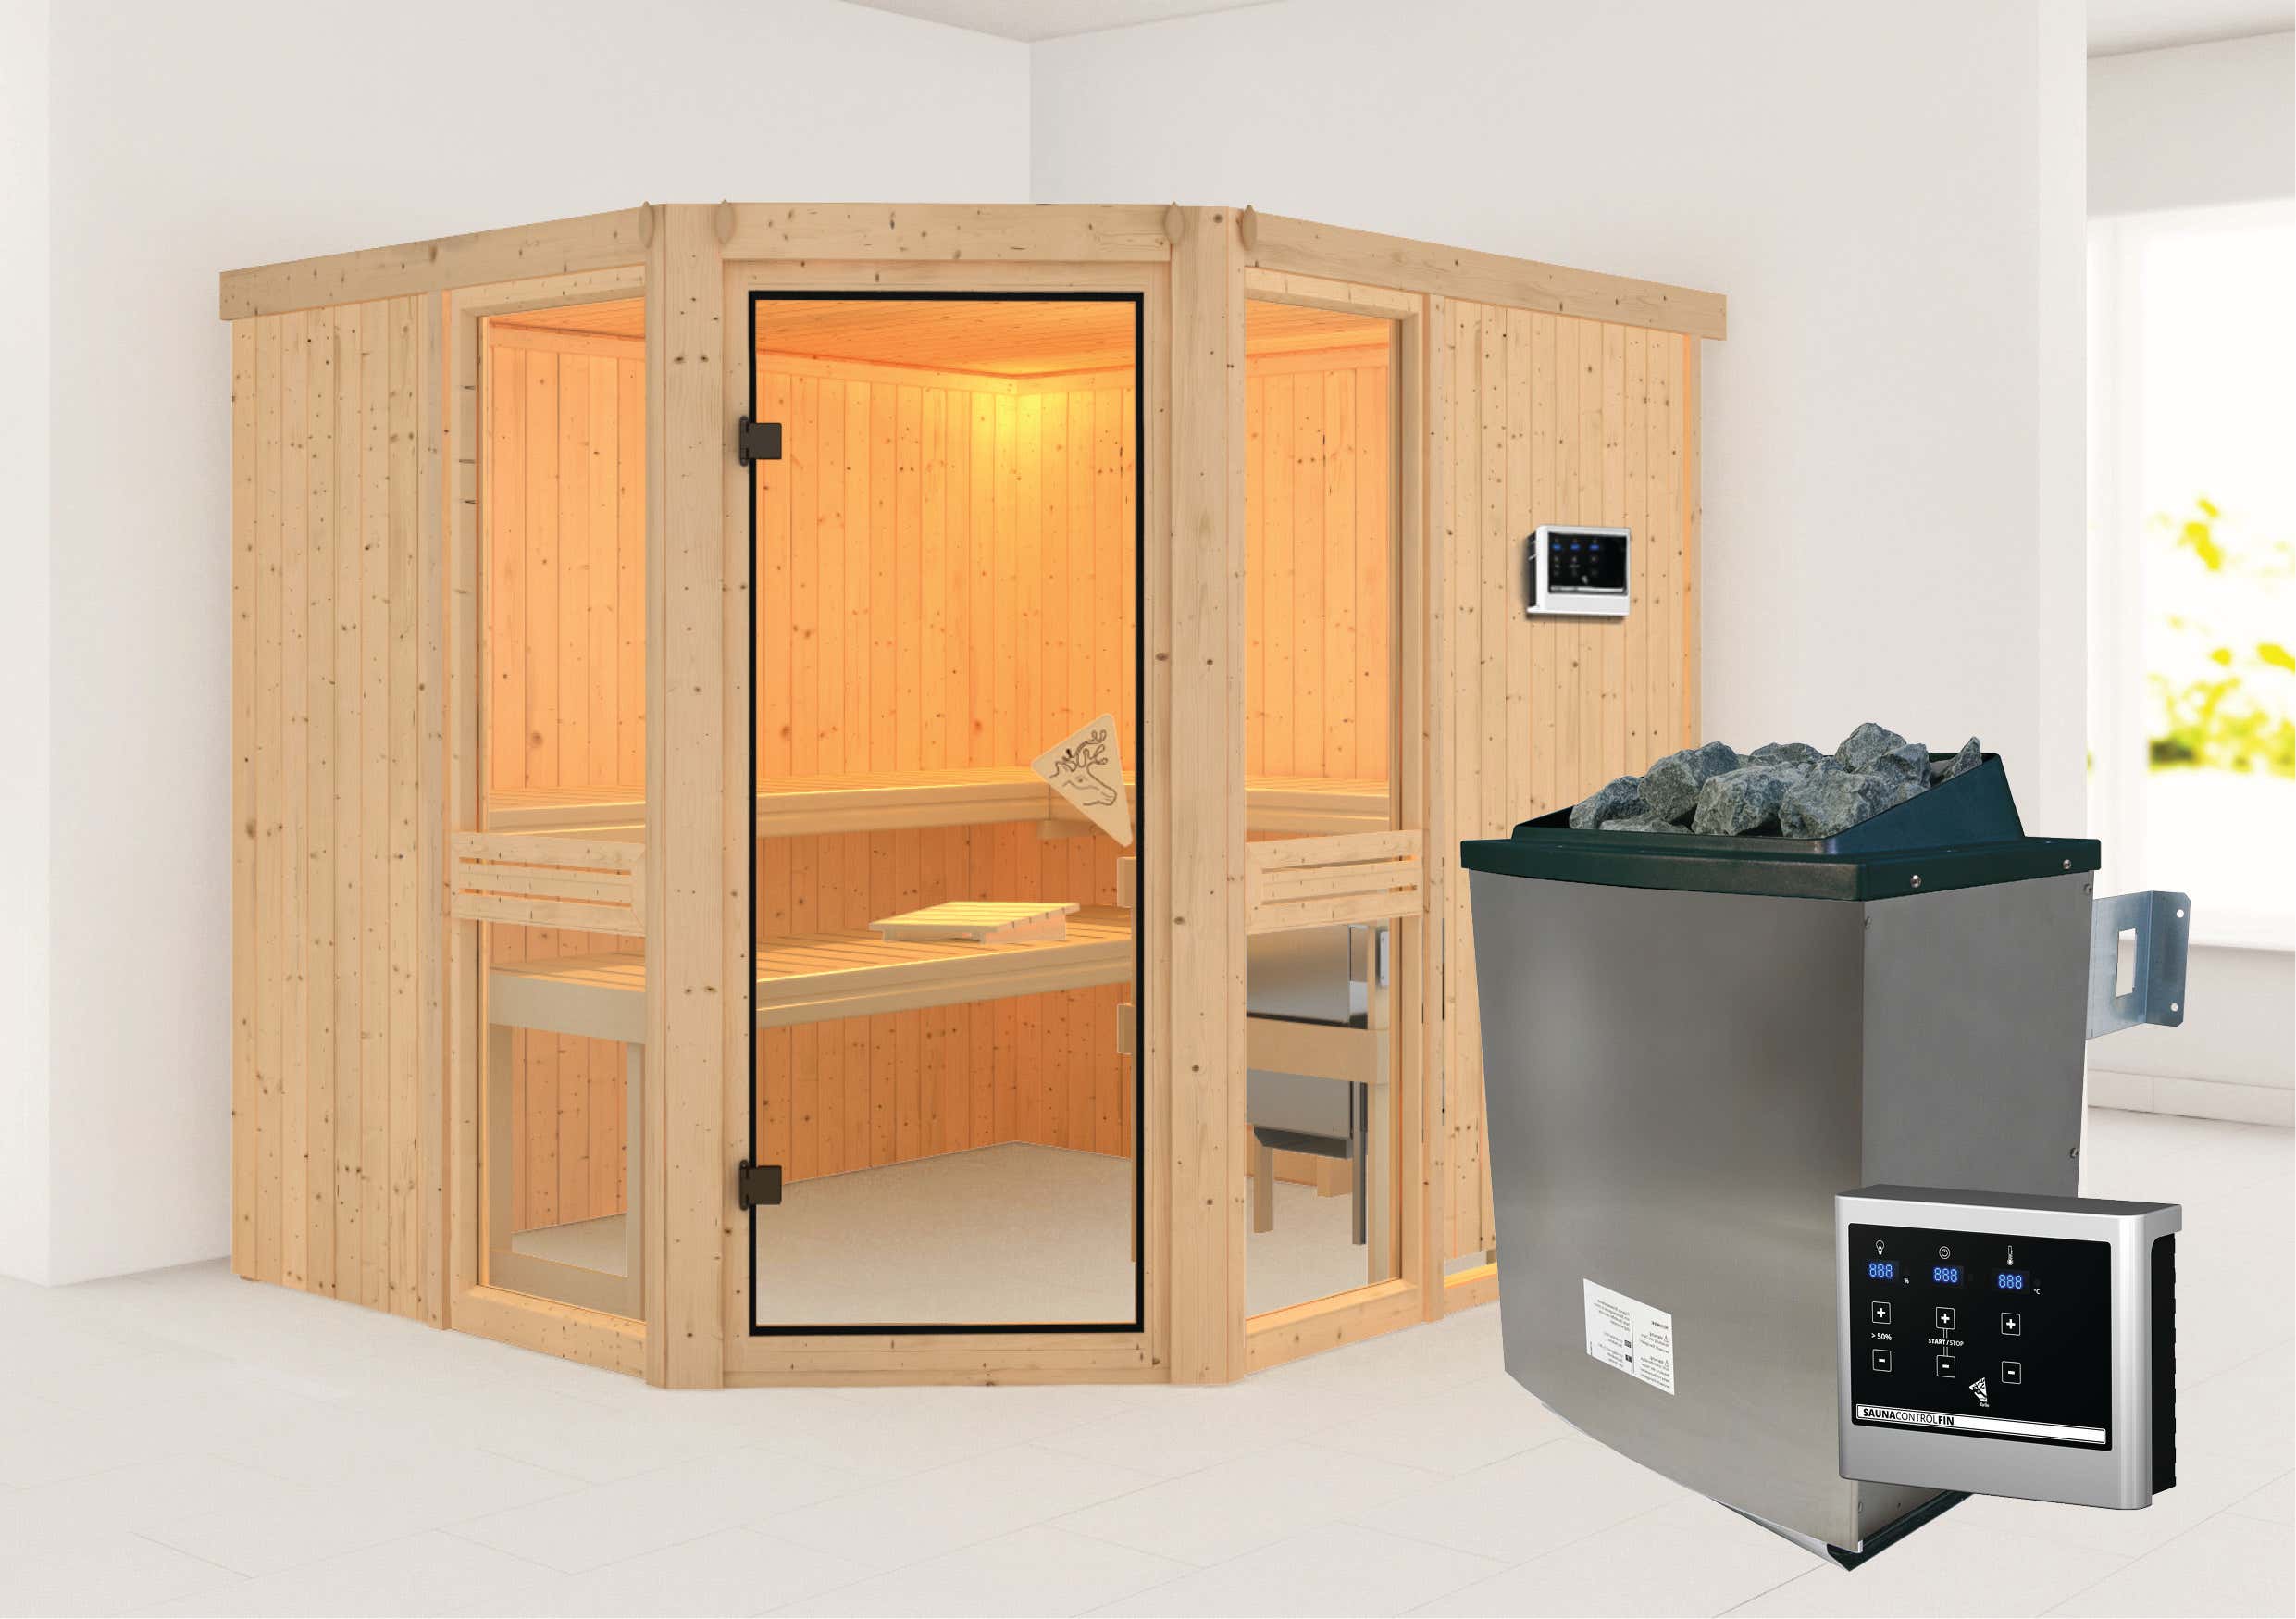 Karibu Sauna Innenkabine Amelia Saunaofen:9 KW BioAktiv Kombiofen, ext. Steuerung|Ausführung:Ohne Dachkranz|Größe:B 245 x T 210 x H 202 cm